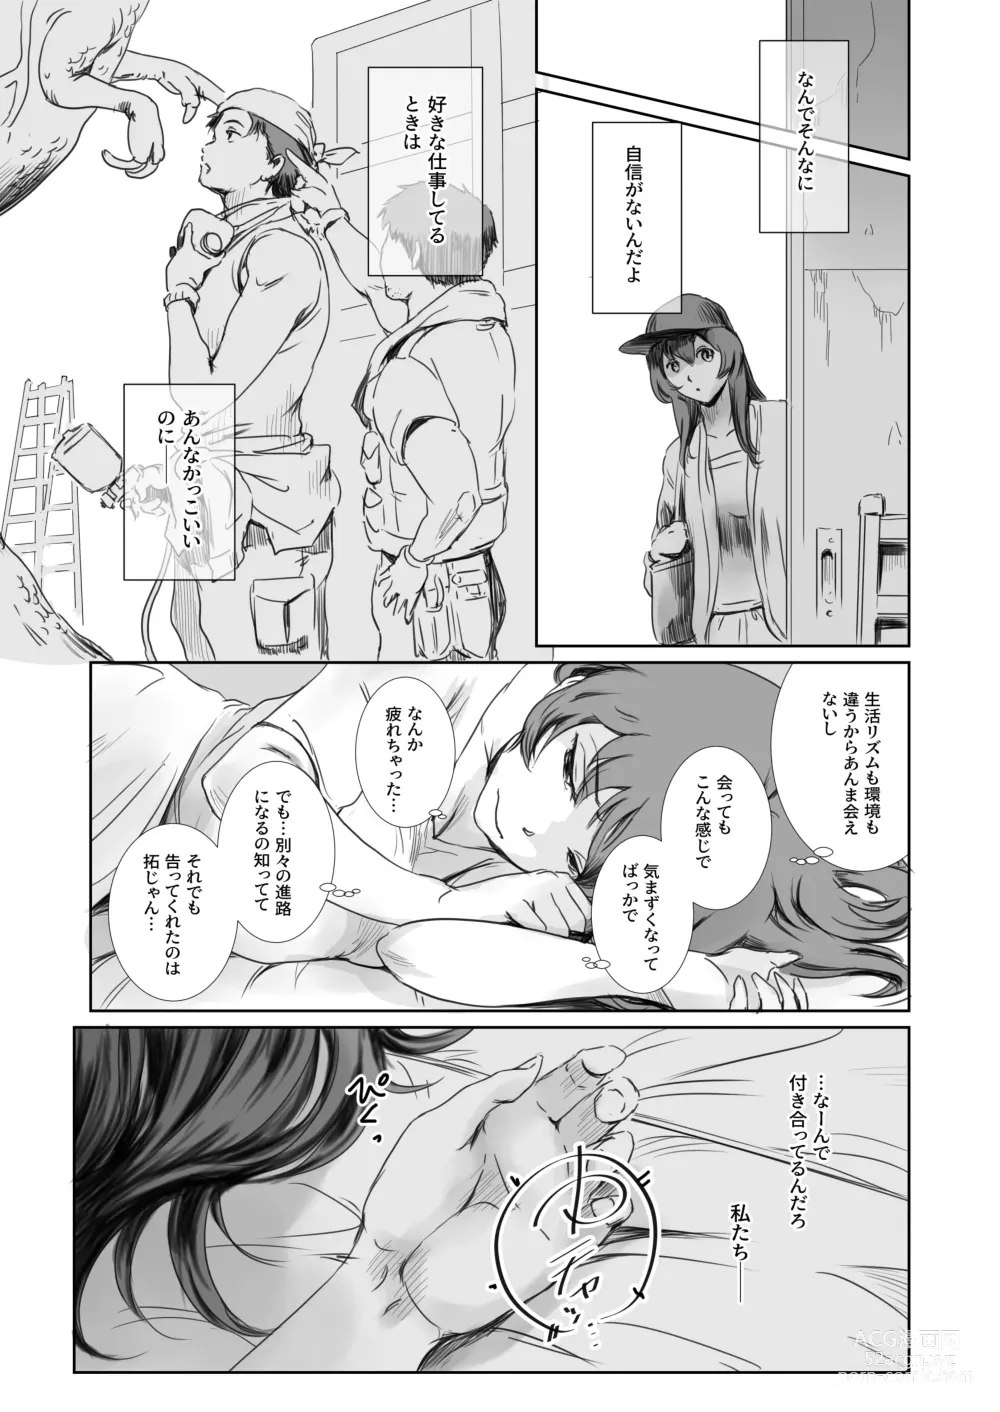 Page 8 of doujinshi Niketsu no Futari